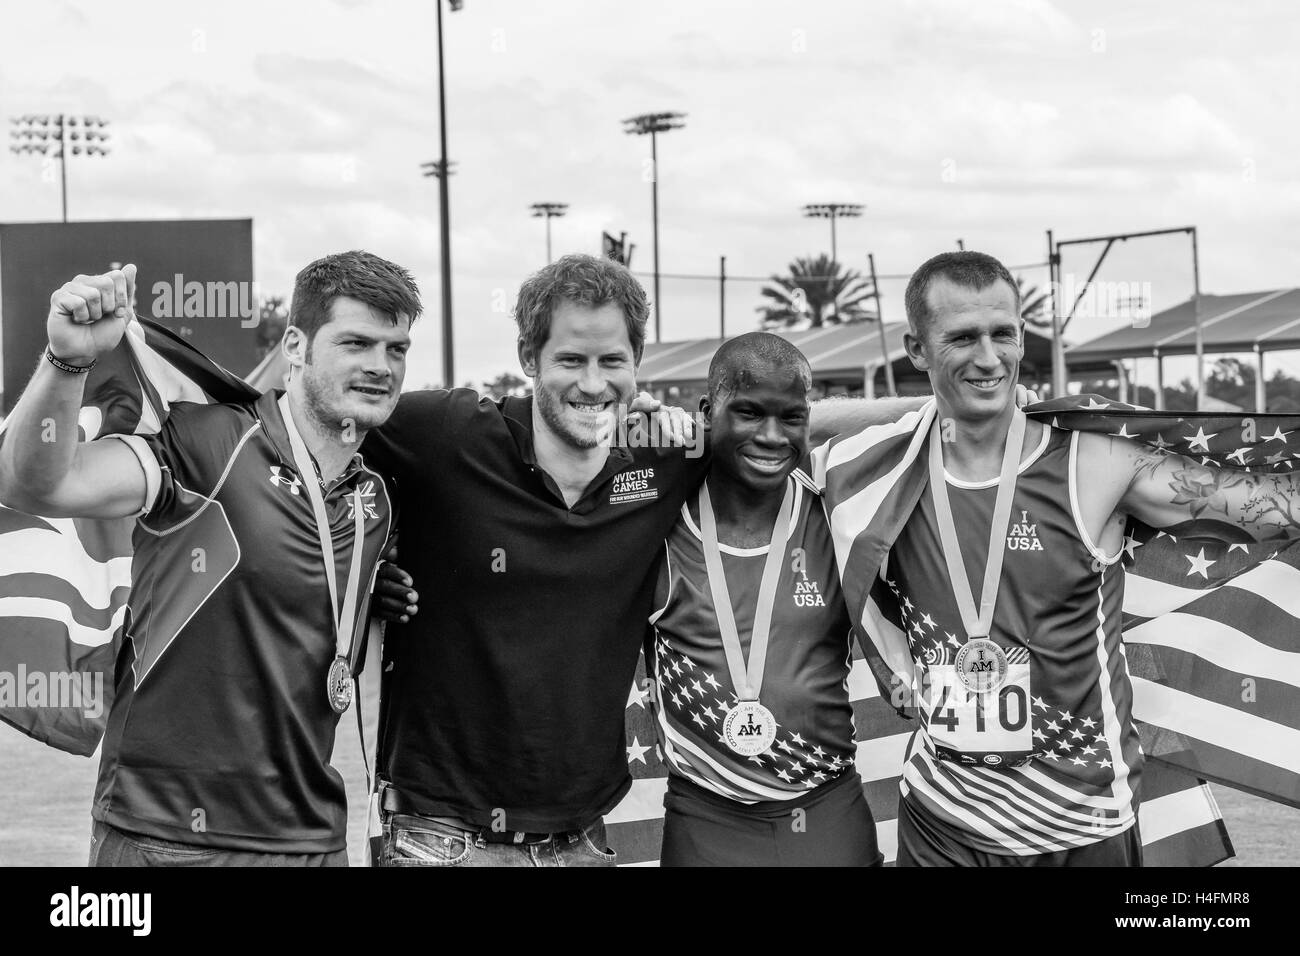 David Henson, der das Vereinigte Königreich, zusammen mit Allan Armstrong und William Reynolds der USA, posieren mit Prinz Harry, nachdem er sie mit ihren Medaillen für die Männer 200 Meter Dash IT2 während die Invictus Games on 10. Mai 2016 auf ESPN breit vorgestellt Stockfoto